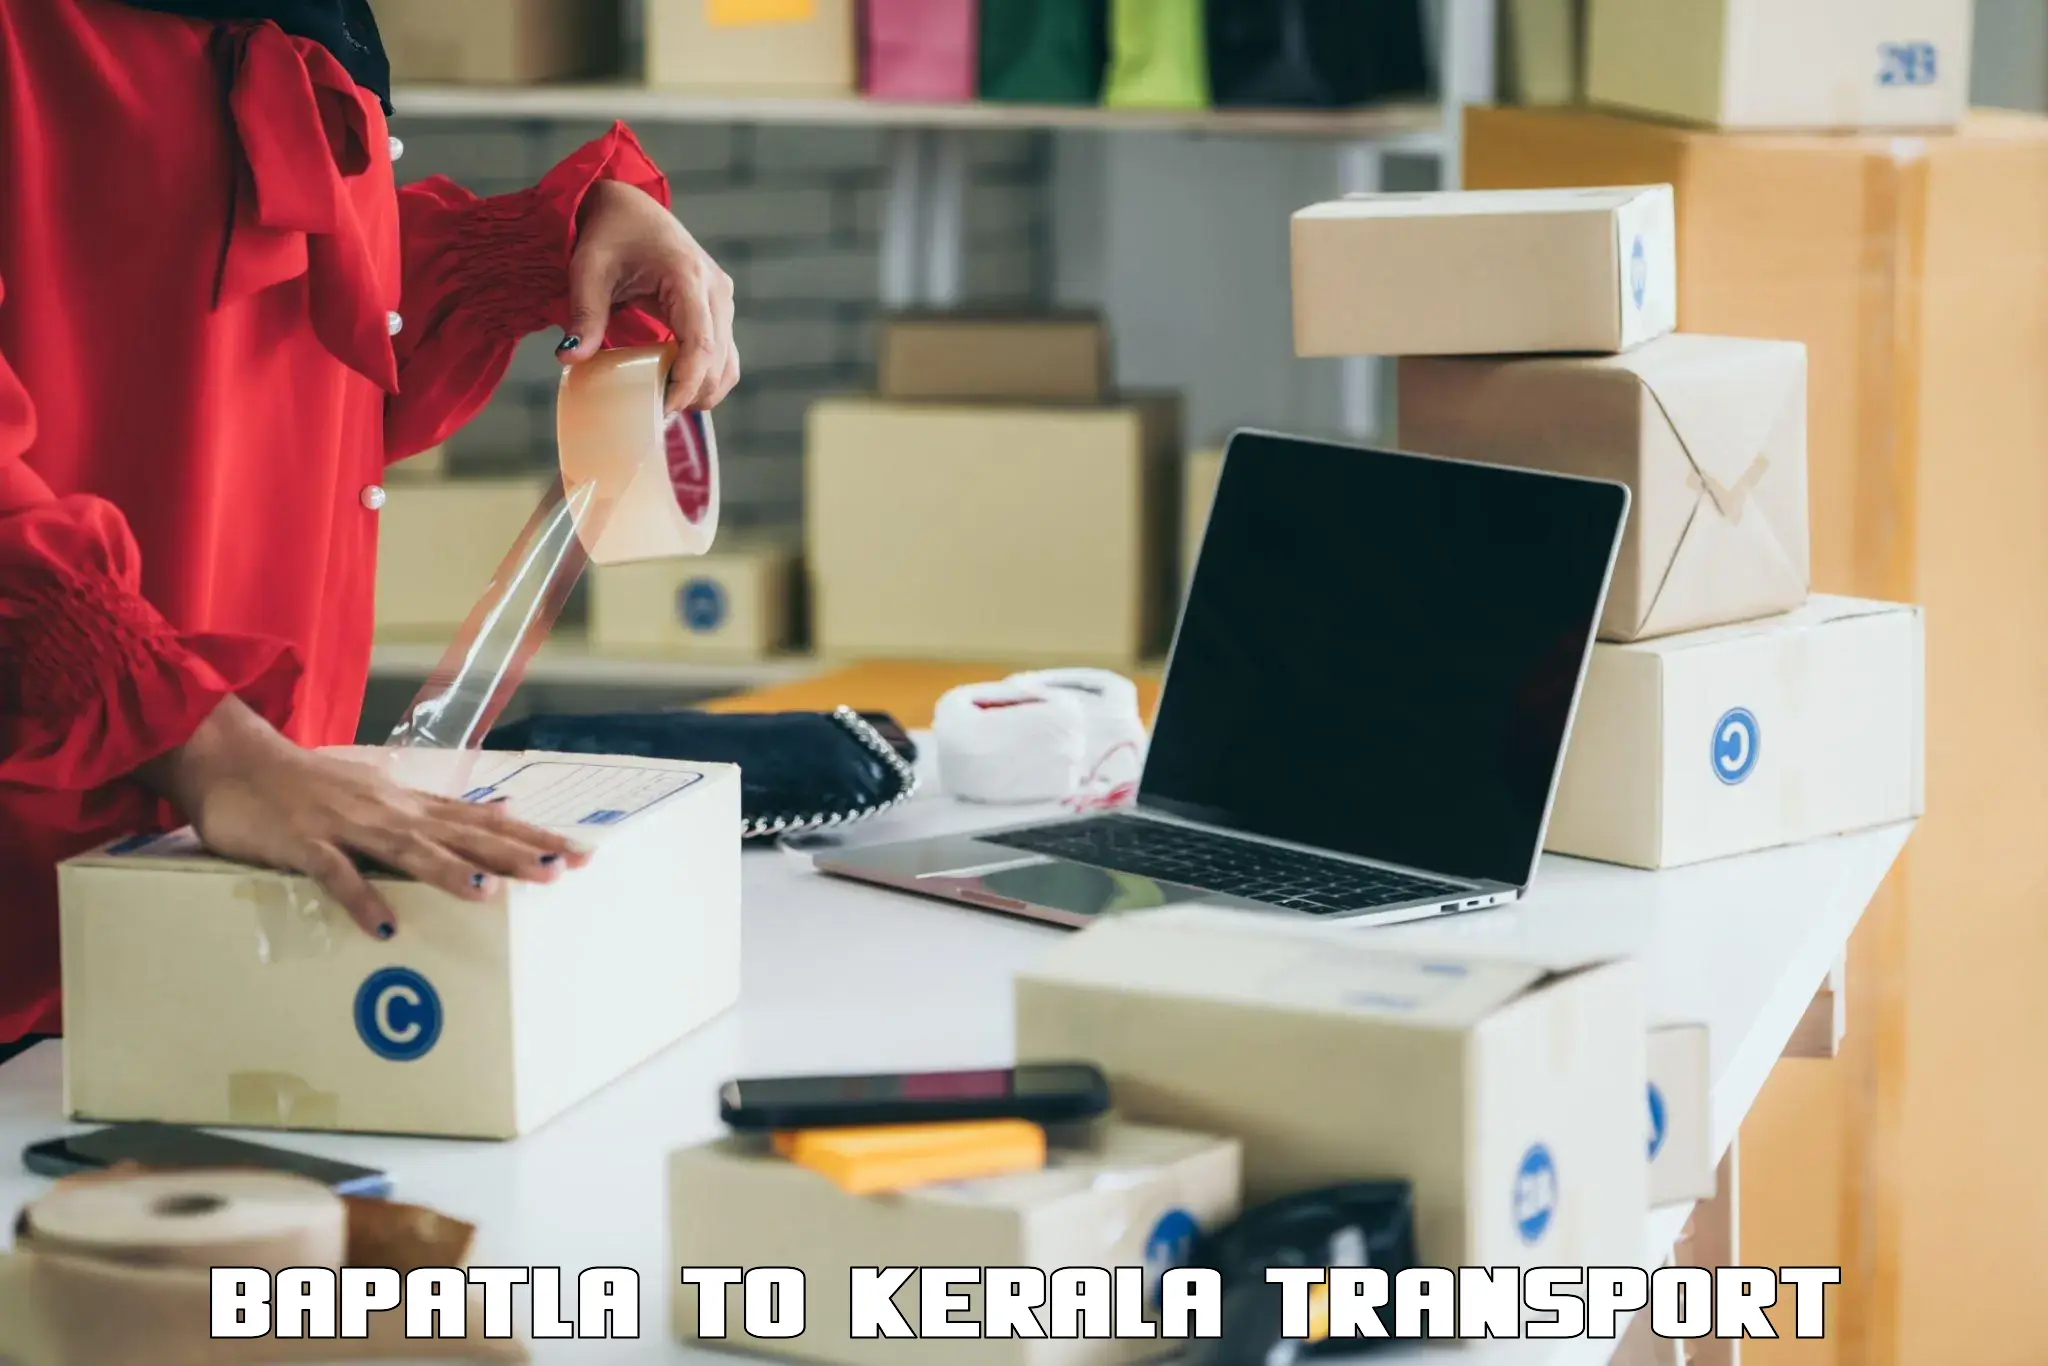 Online transport service Bapatla to Kanjirapally